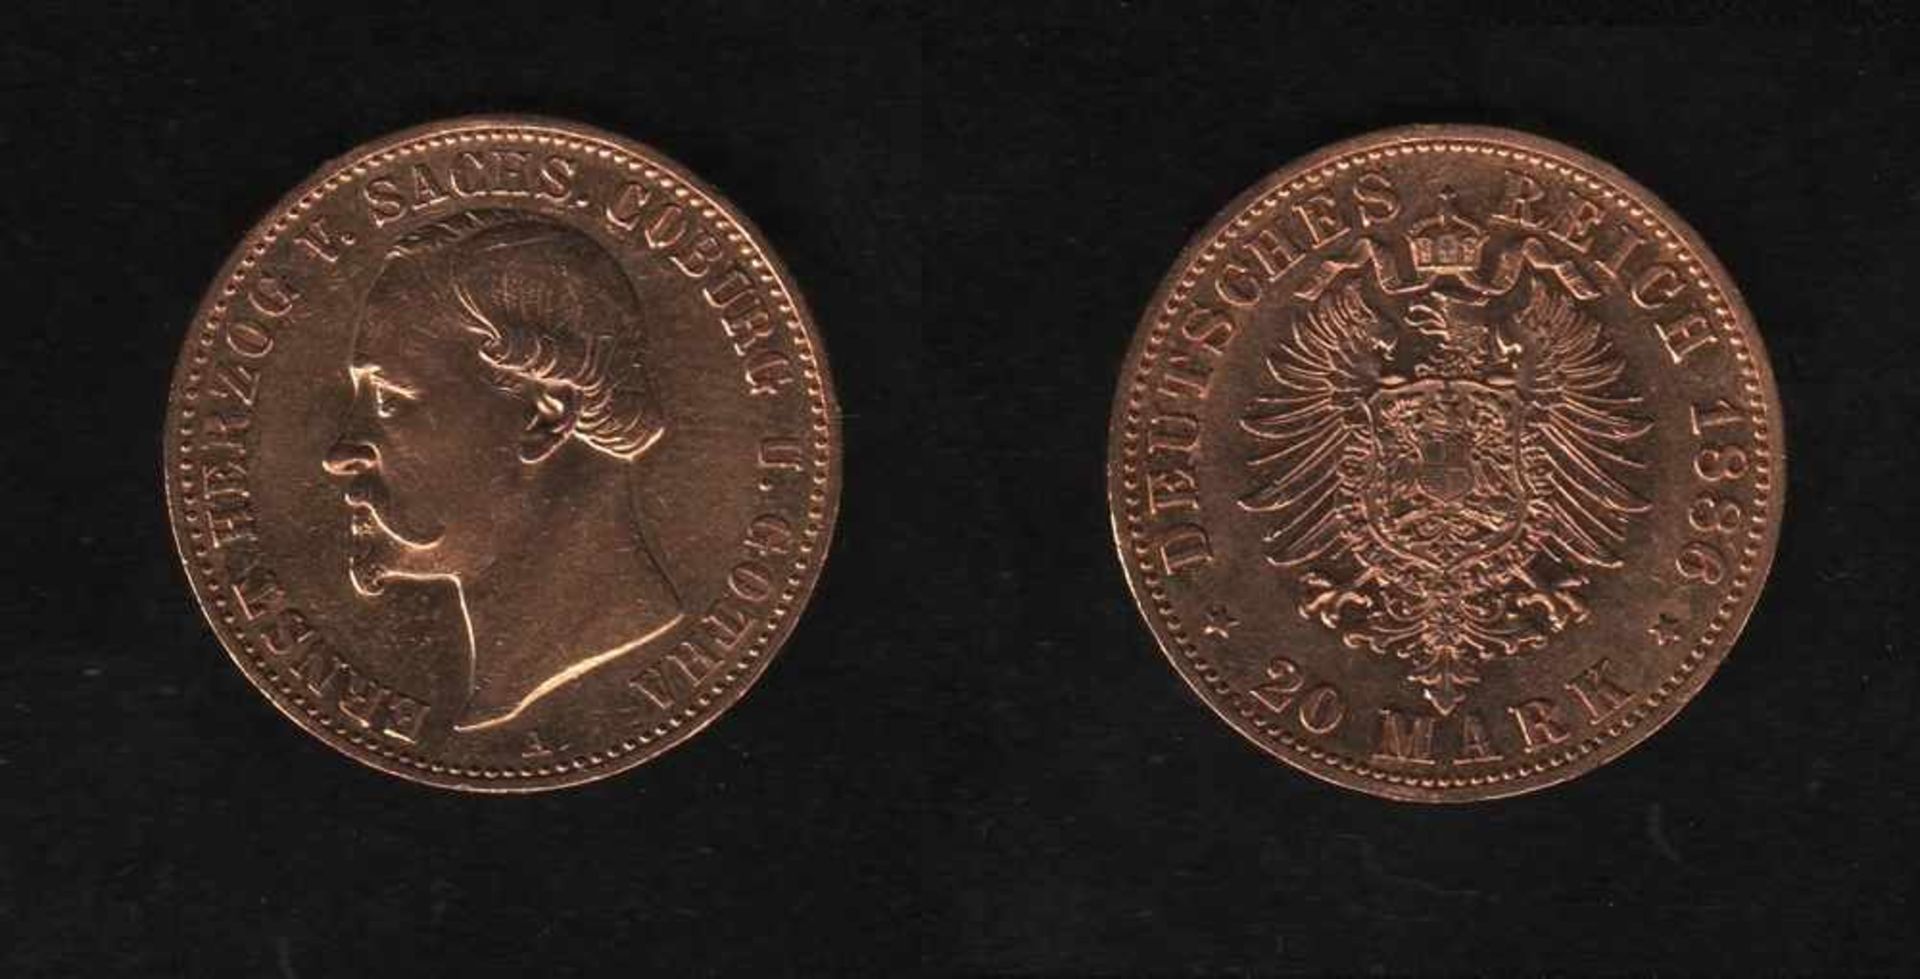 Deutsches Reich. Goldmünze.20 Mark. Ernst II., Herzog von Sachsen - Coburg und Gotha. A 1886.